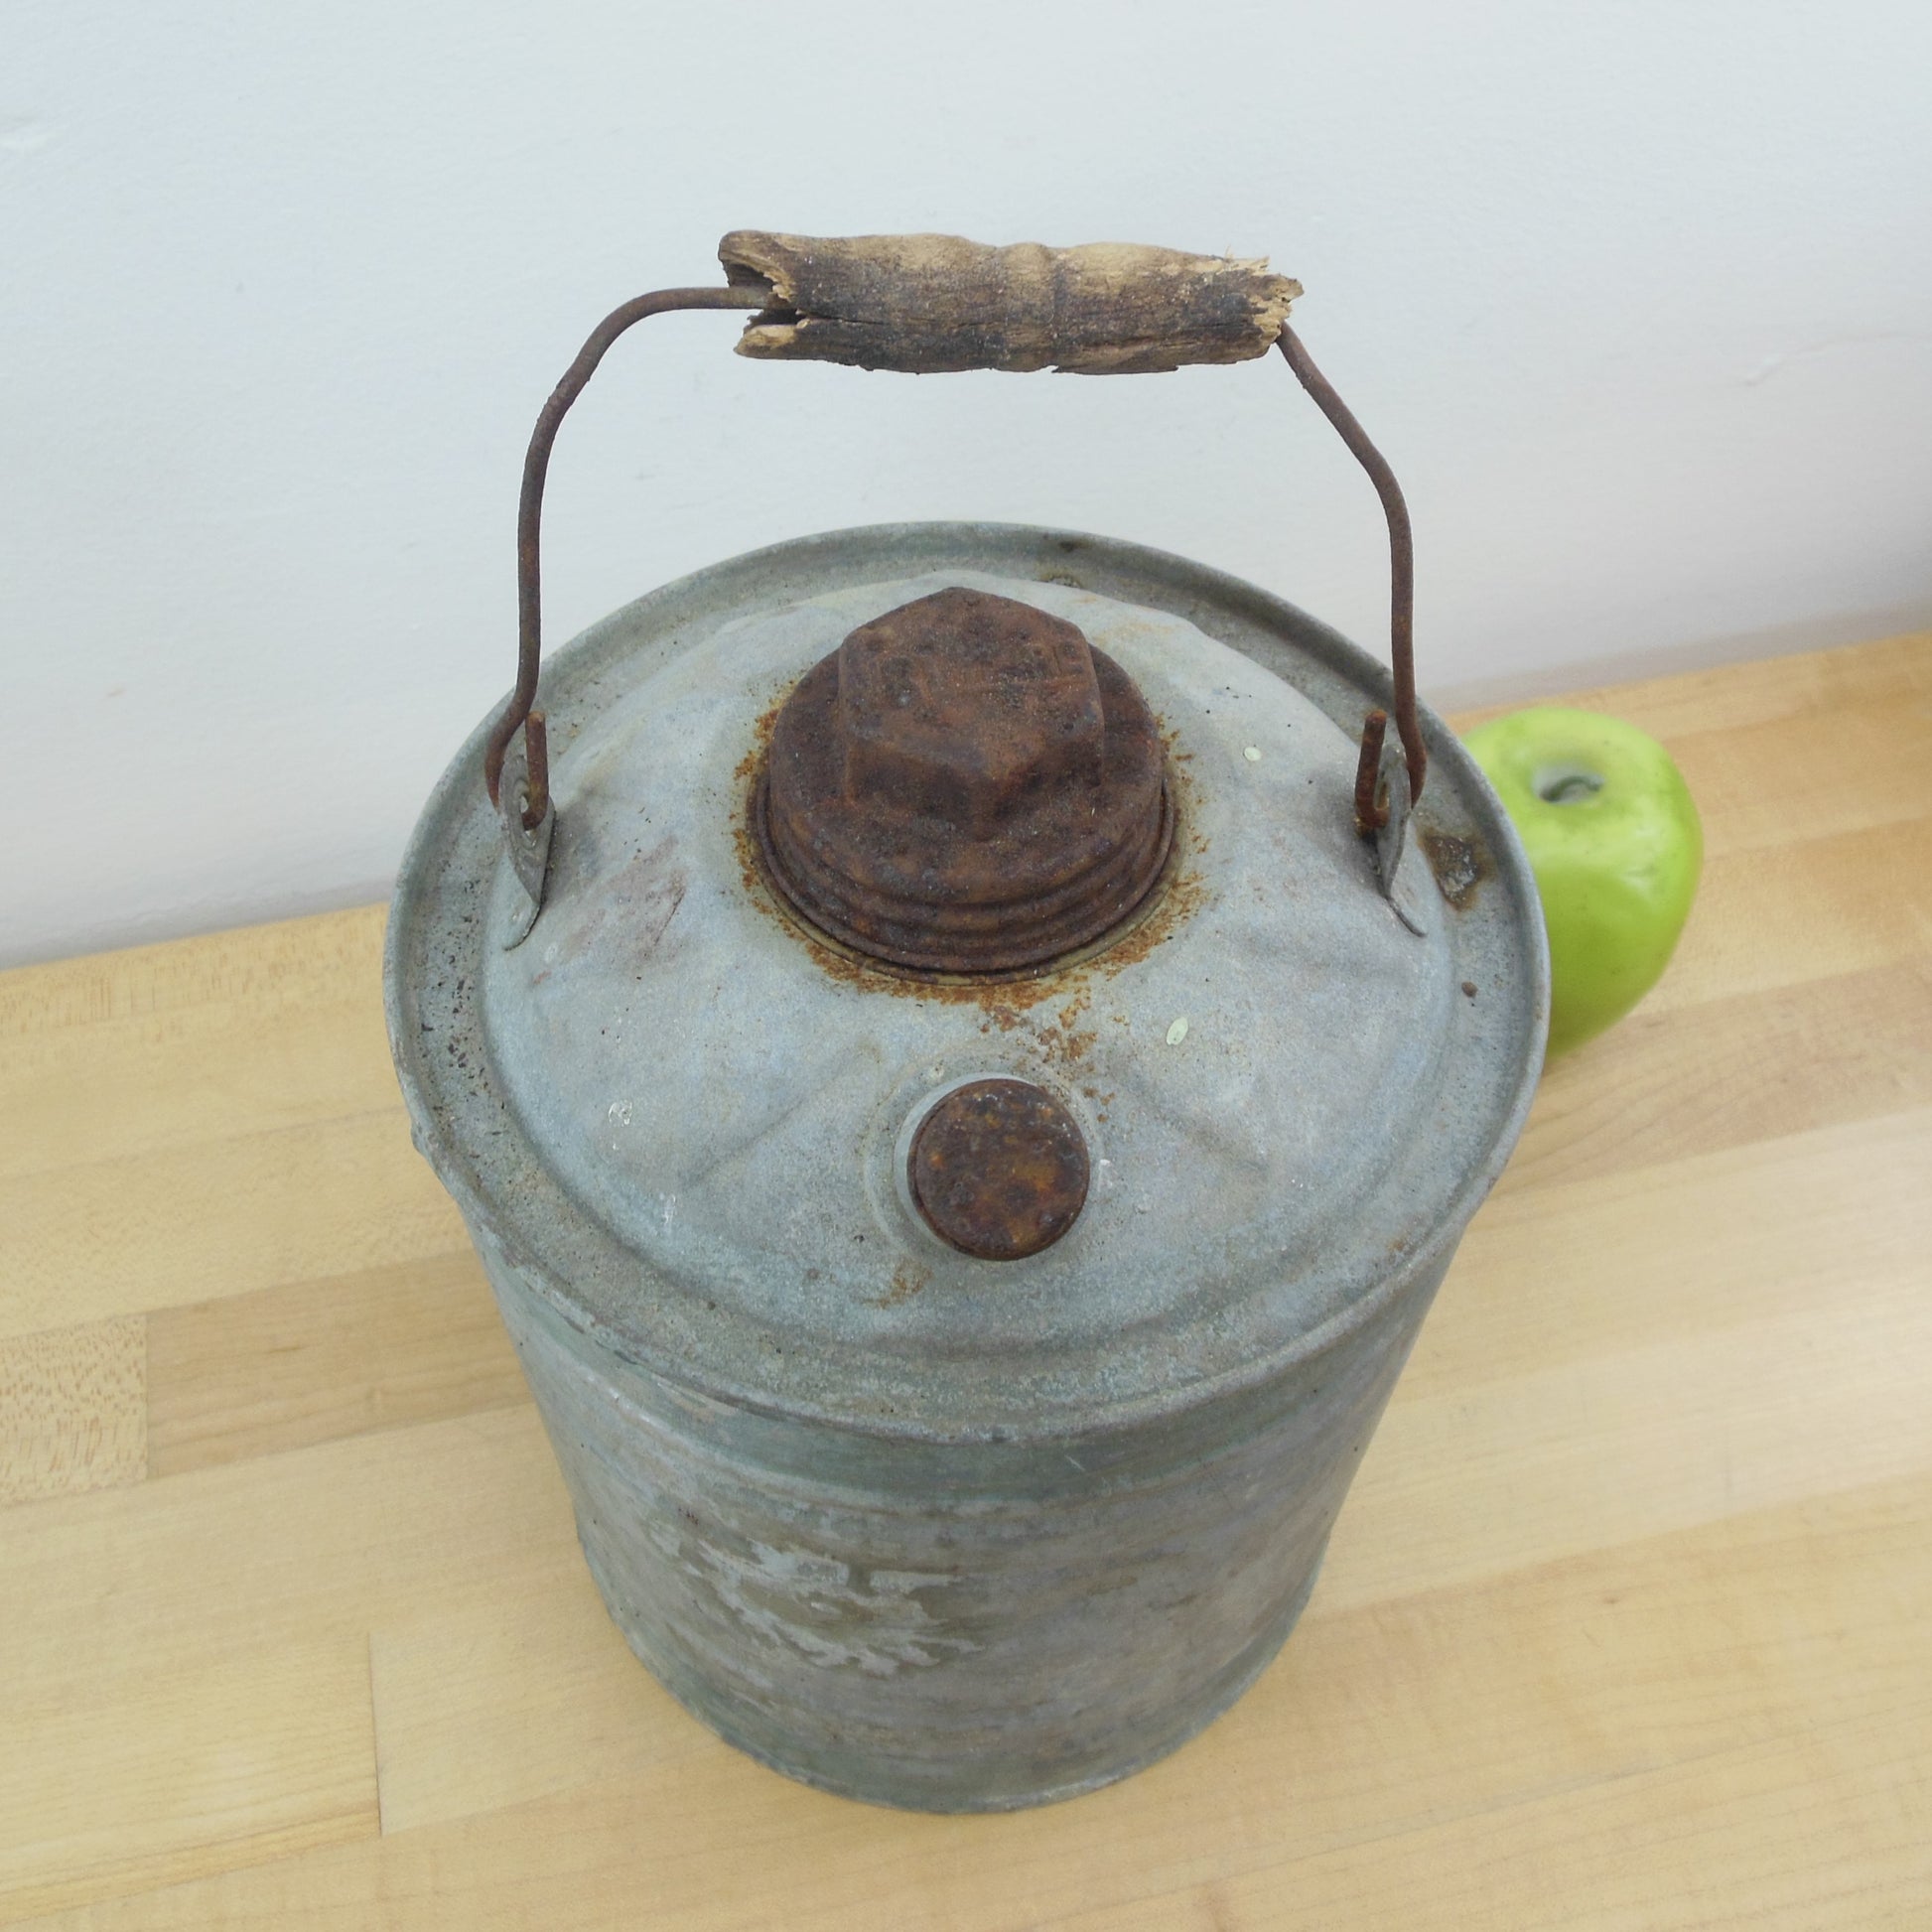 J&L Ware Galvanized Gas Oil Kerosene Fuel Can - Primitive Décor Vintage